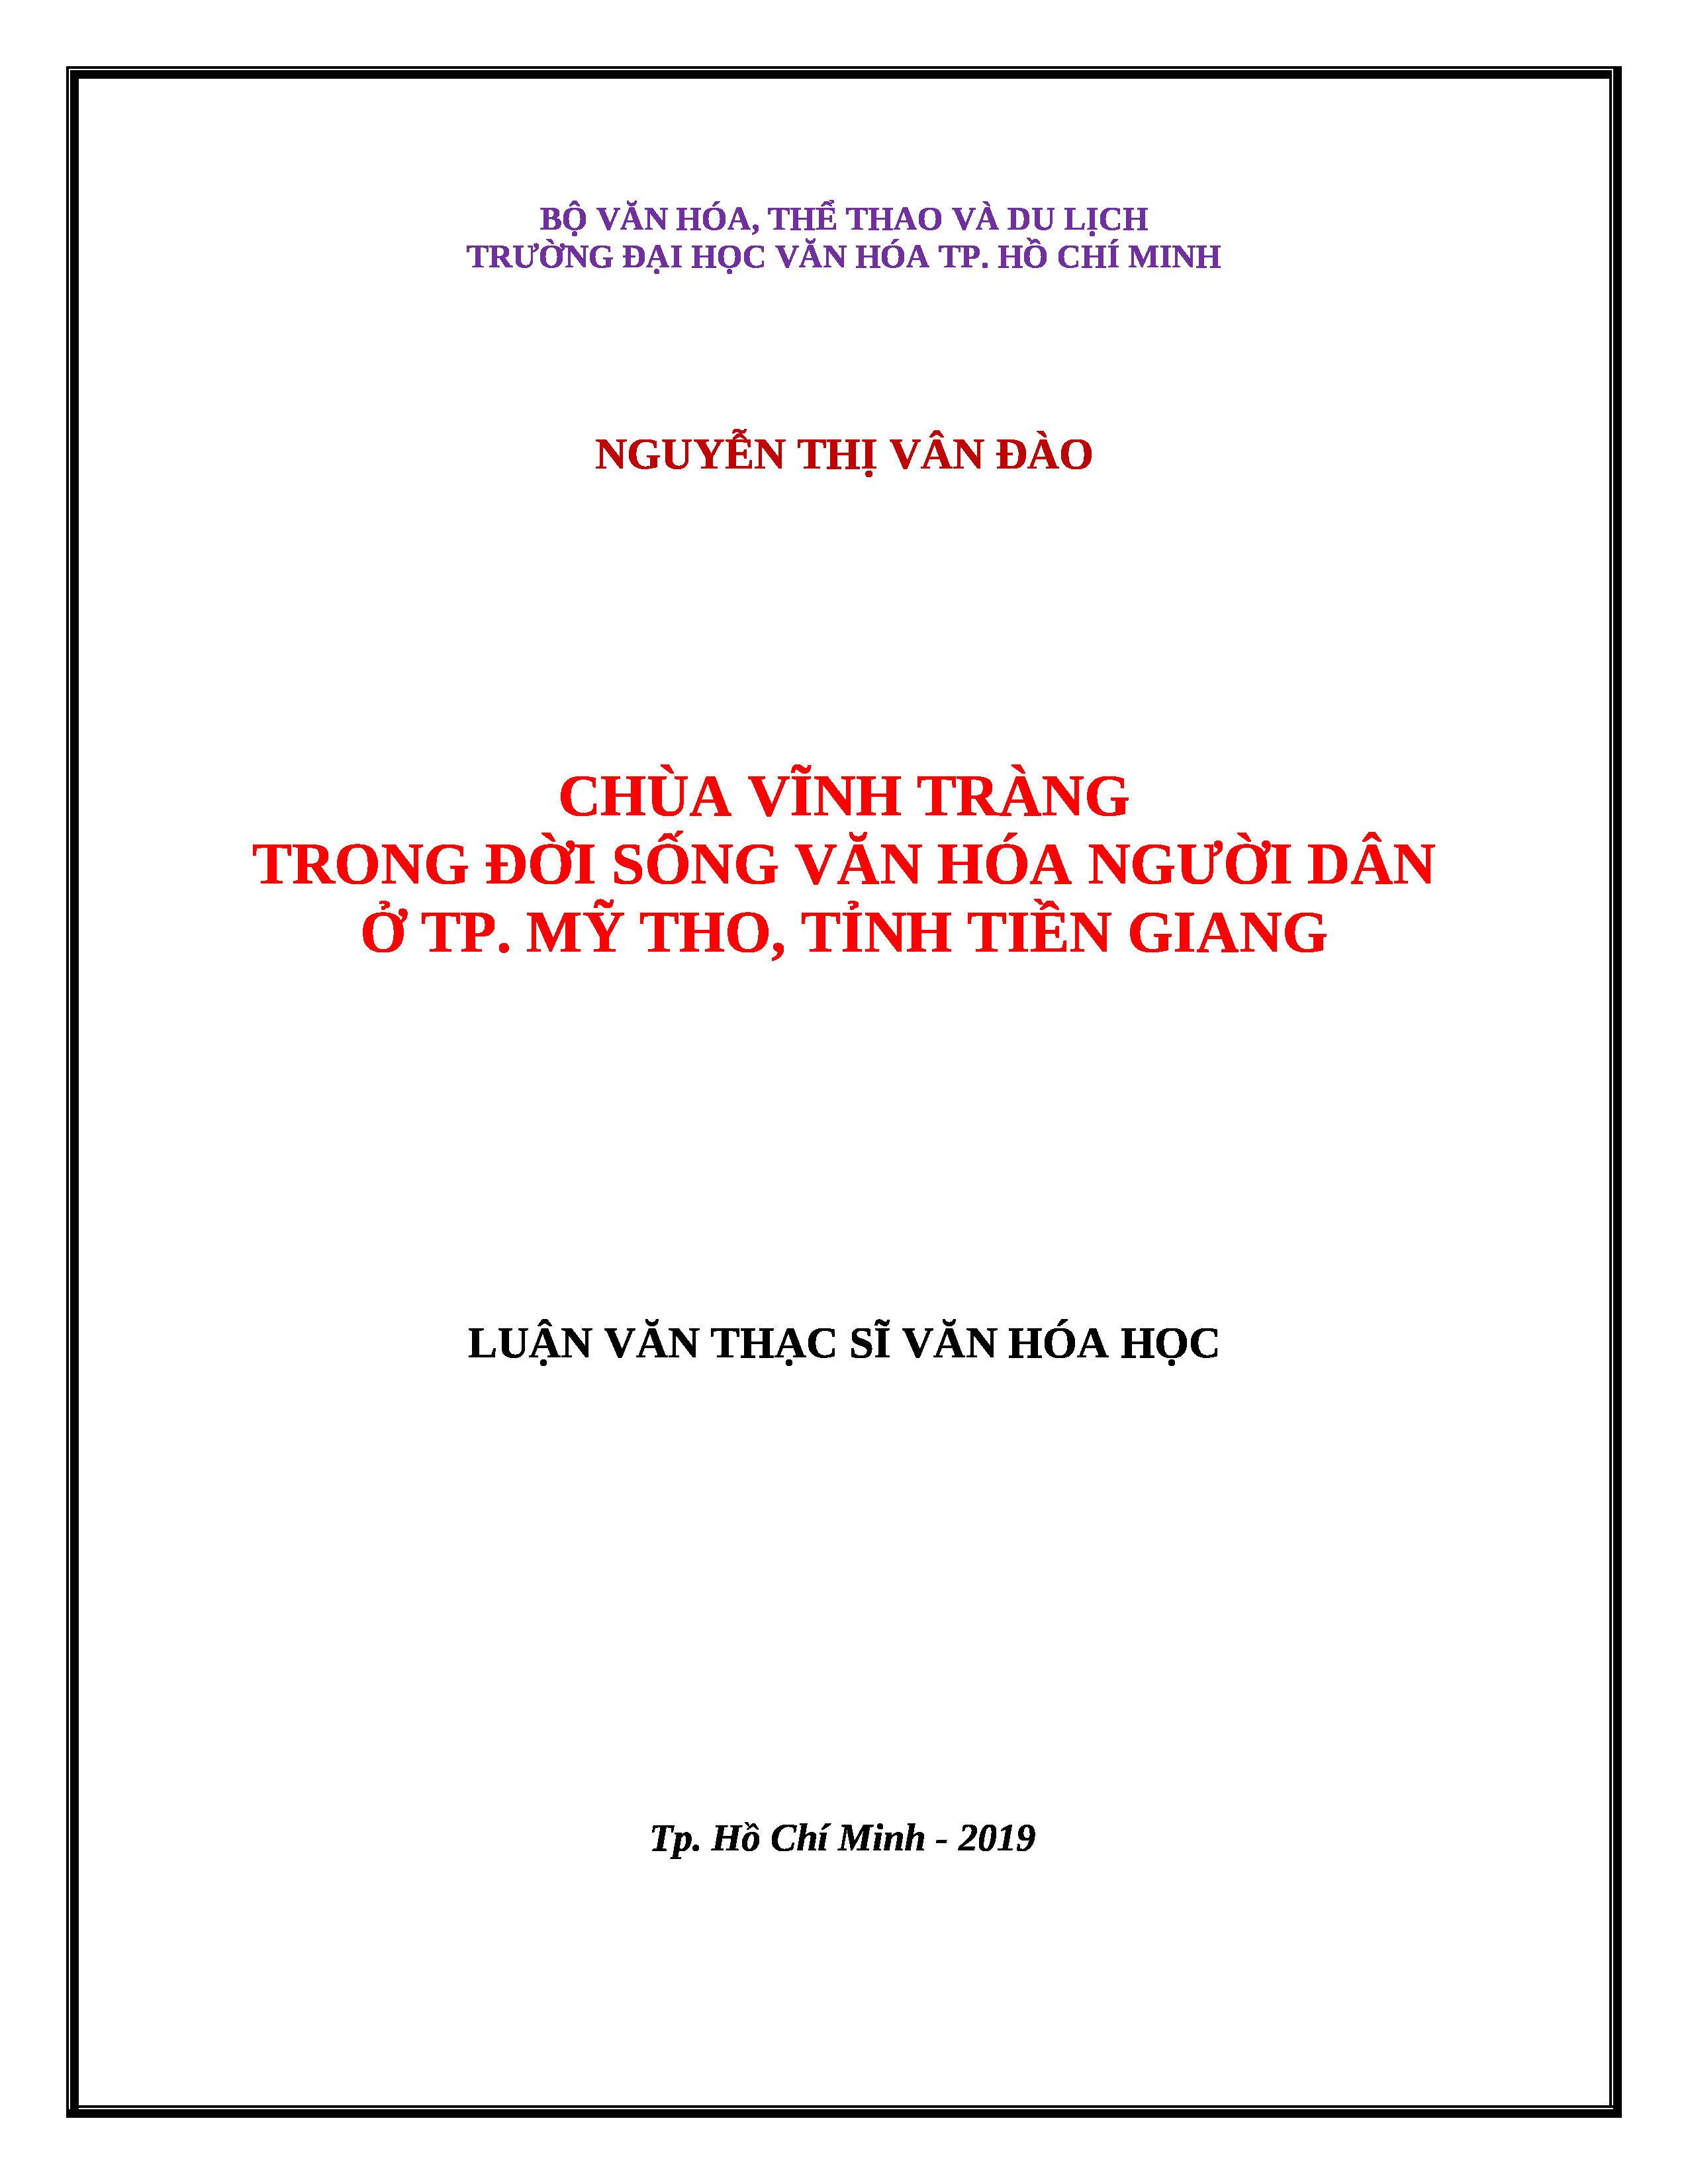 Chùa Vĩnh Tràng trong đời sống văn hoá người dân ở thành phố Mỹ Tho, tỉnh Tiền Giang